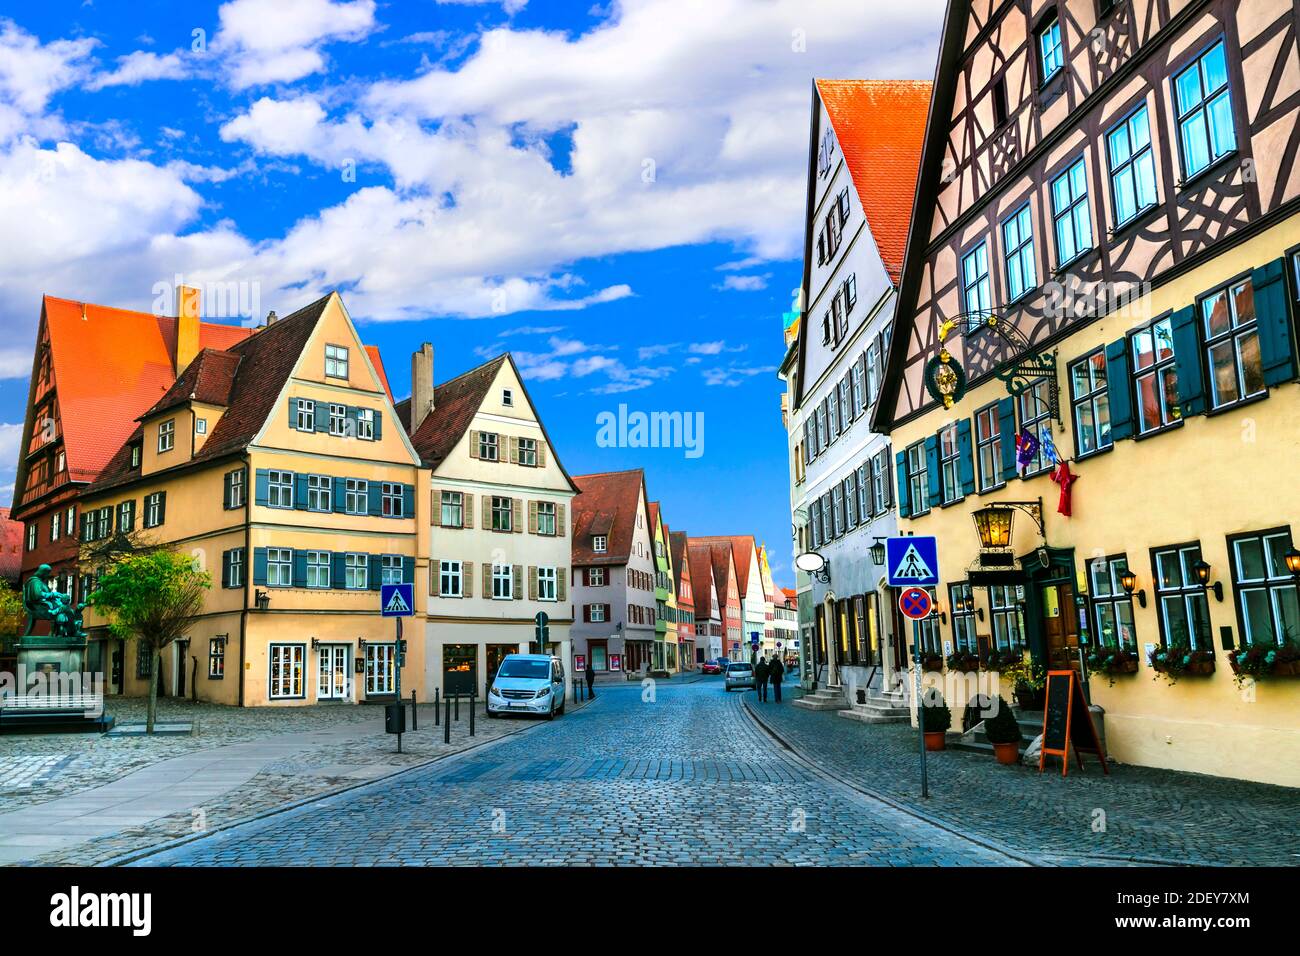 Voyage en Bavière (Allemagne) - la vieille ville de Dinkelsbuhl avec des maisons traditionnelles colorées. Célèbre itinéraire « route romantique » Banque D'Images